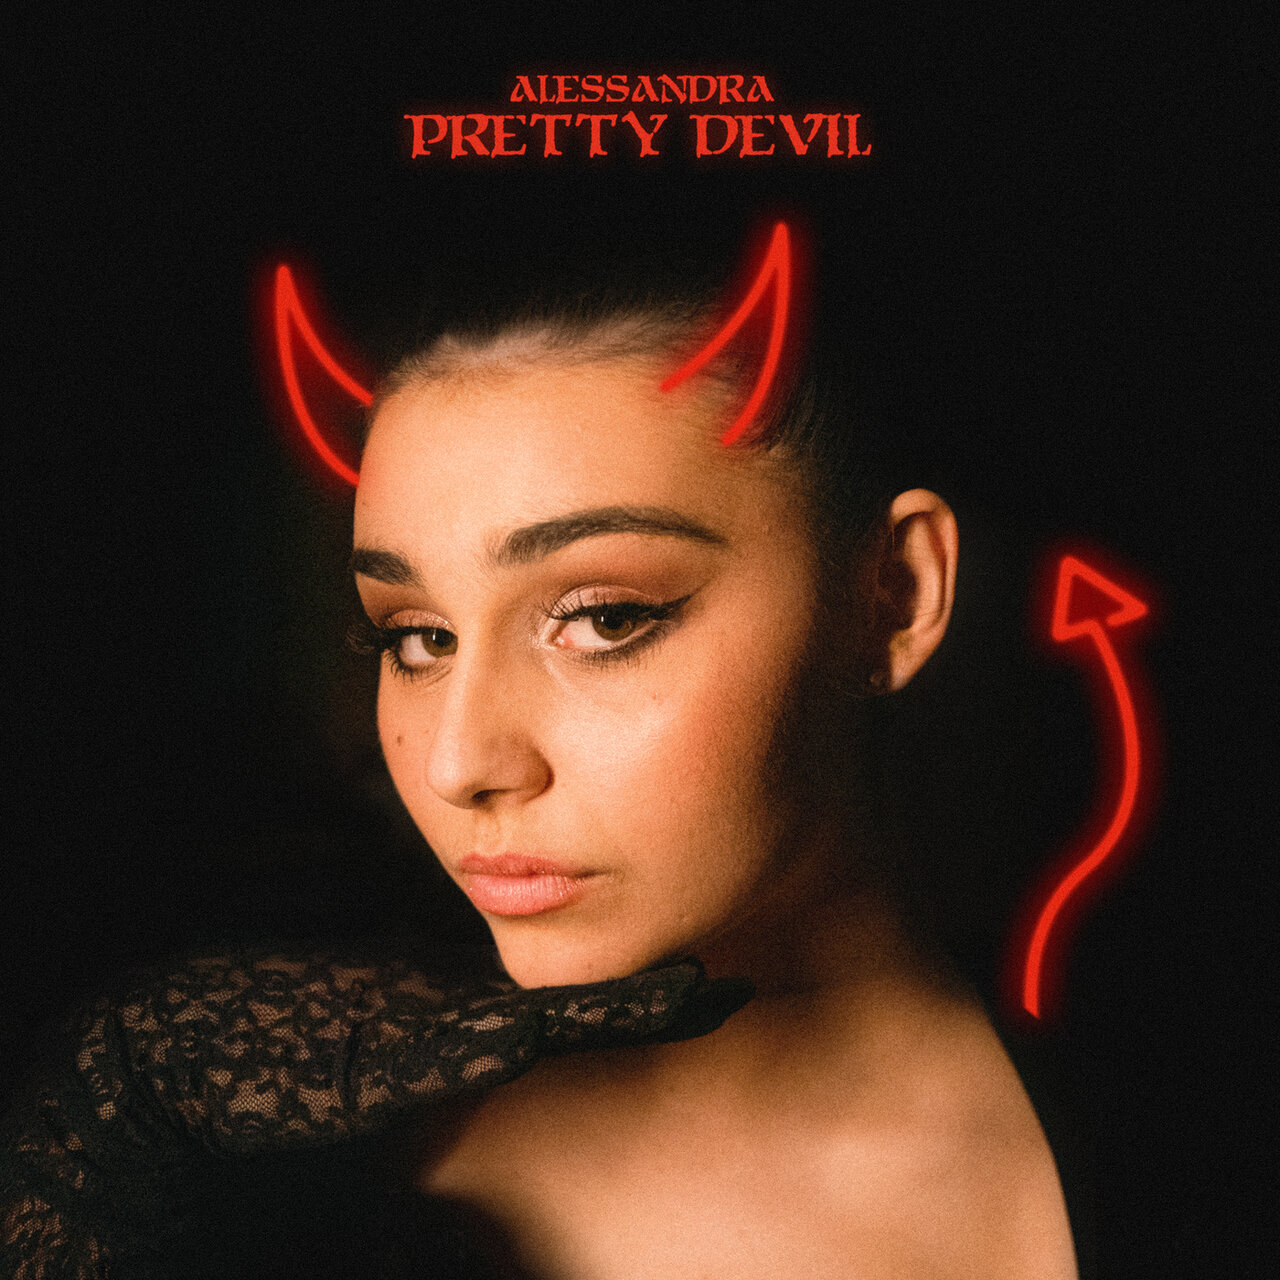 Alessandra Pretty Devil cover artwork